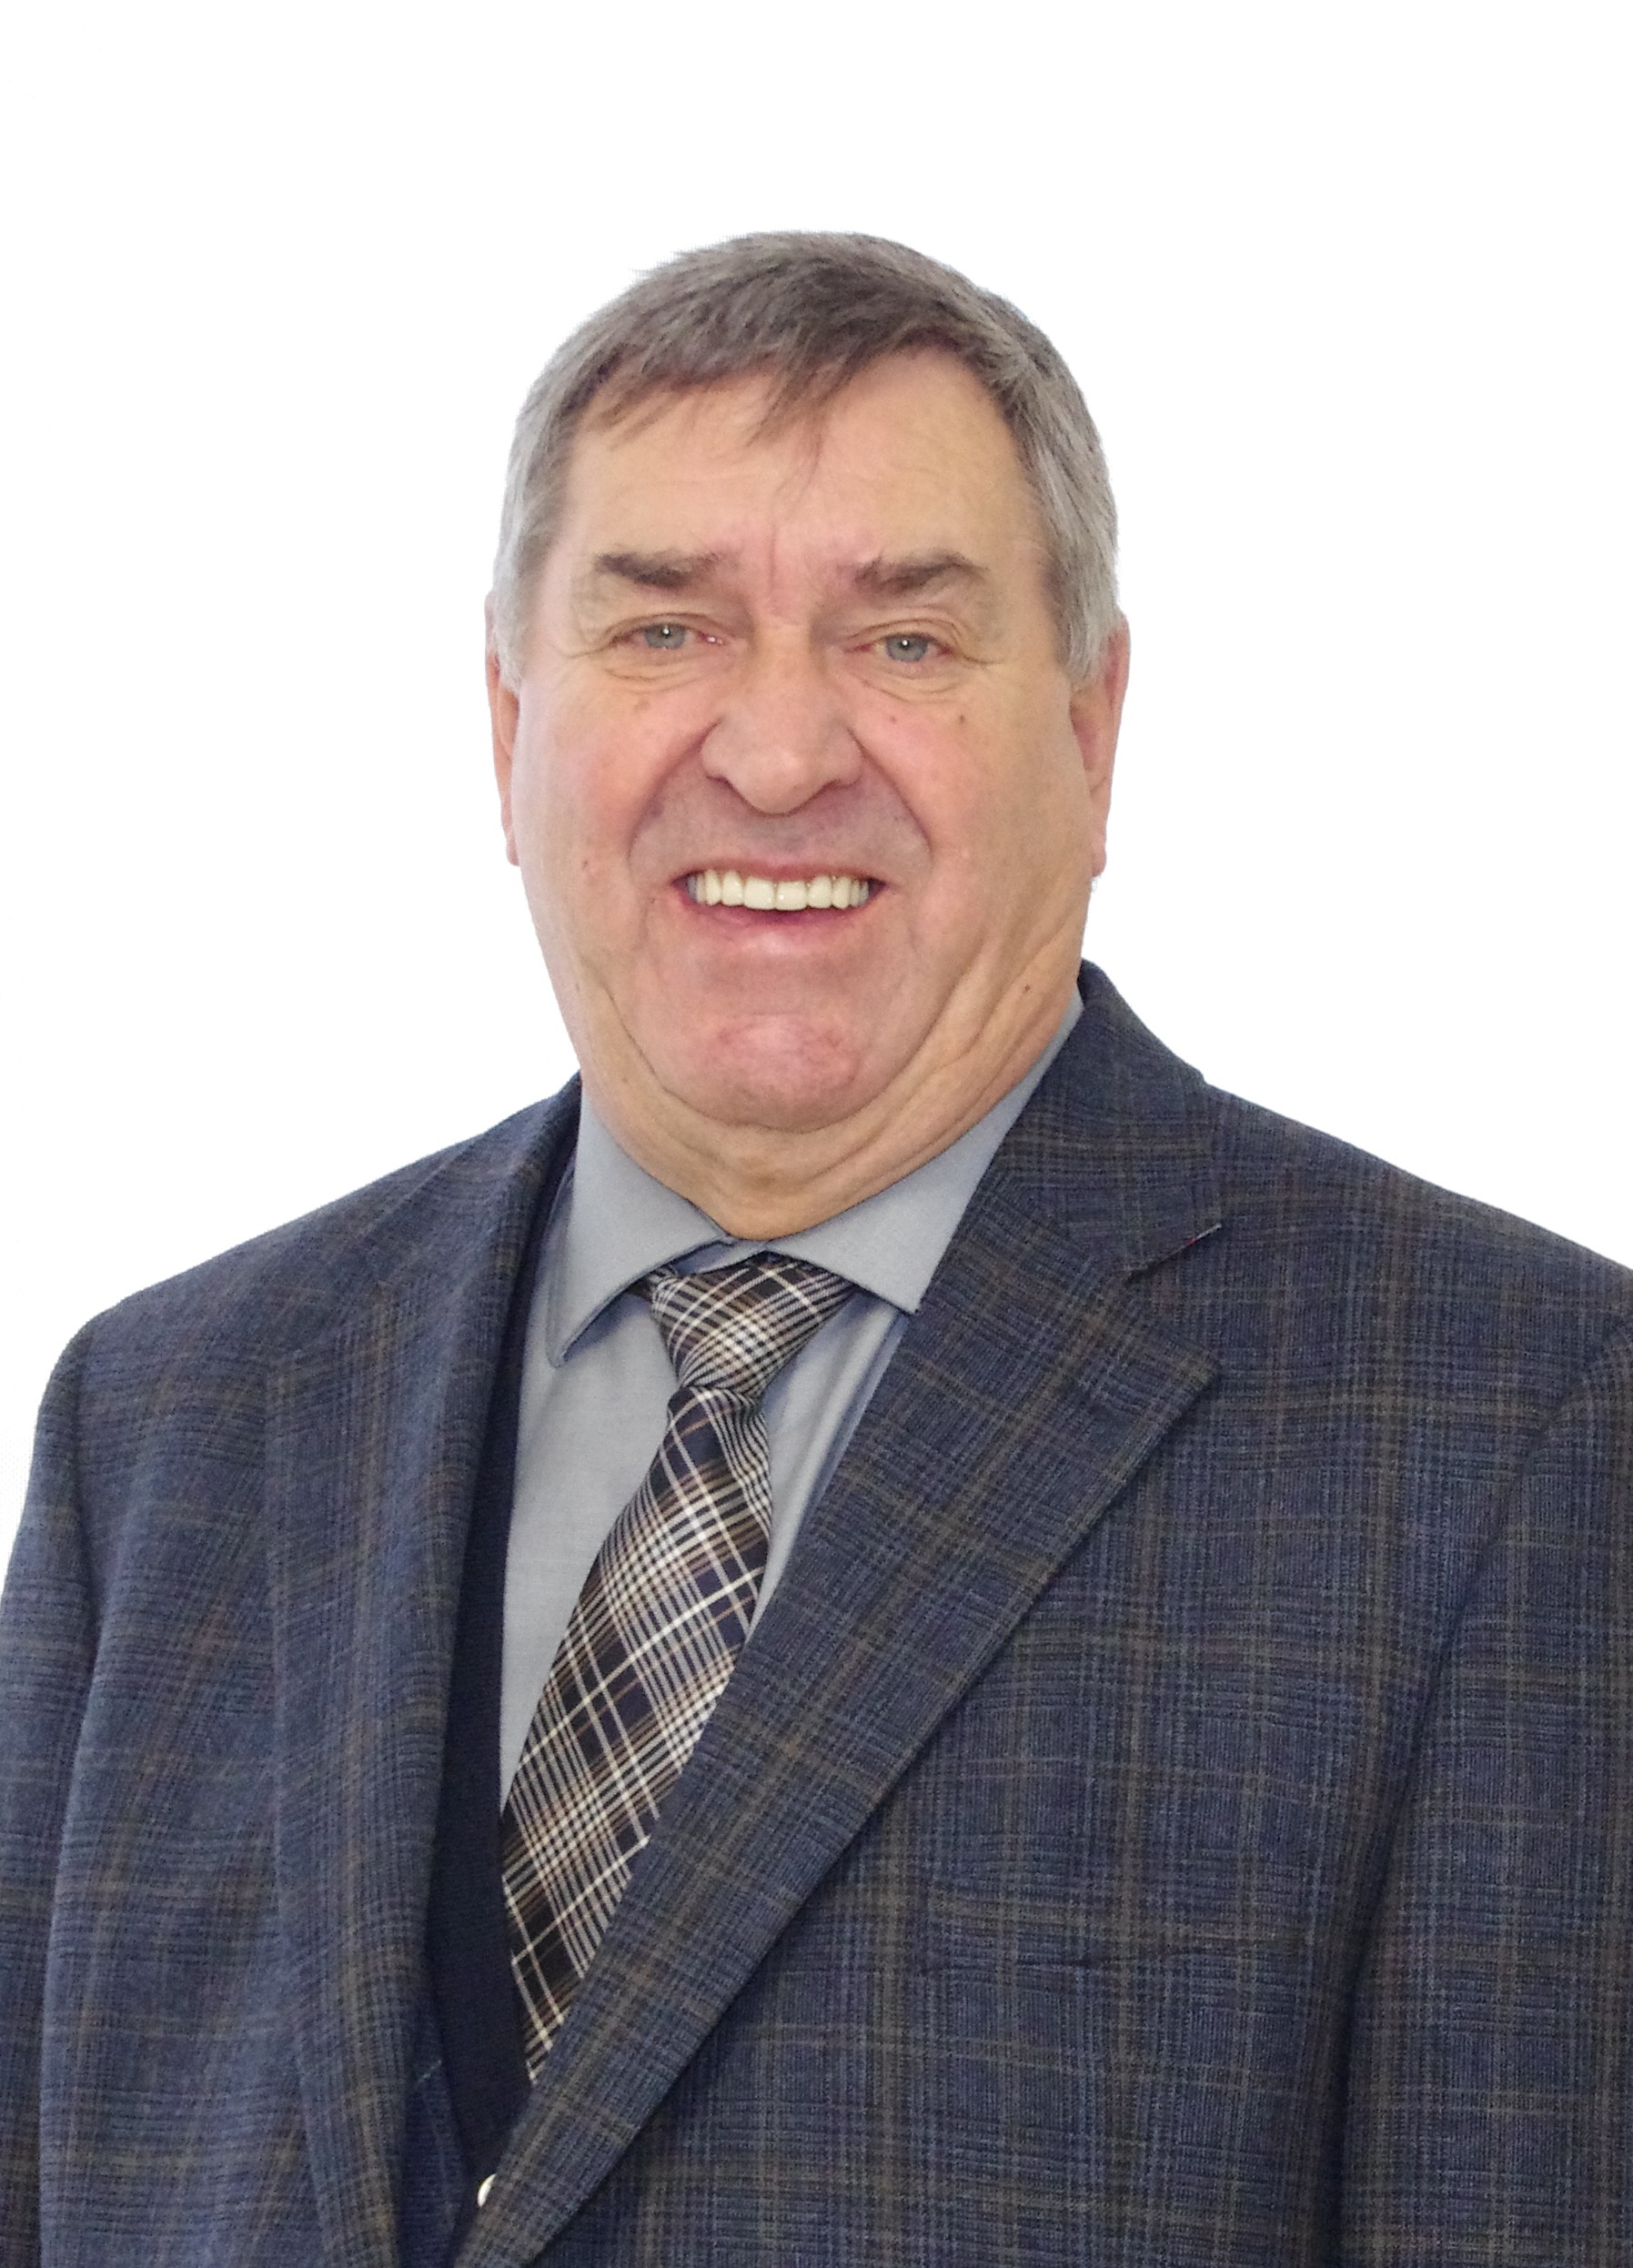 Bernard Lamontagne - Mentor d'entrepreneurs pour la région nord du Québec - Centre d'entrepreneurship nordique